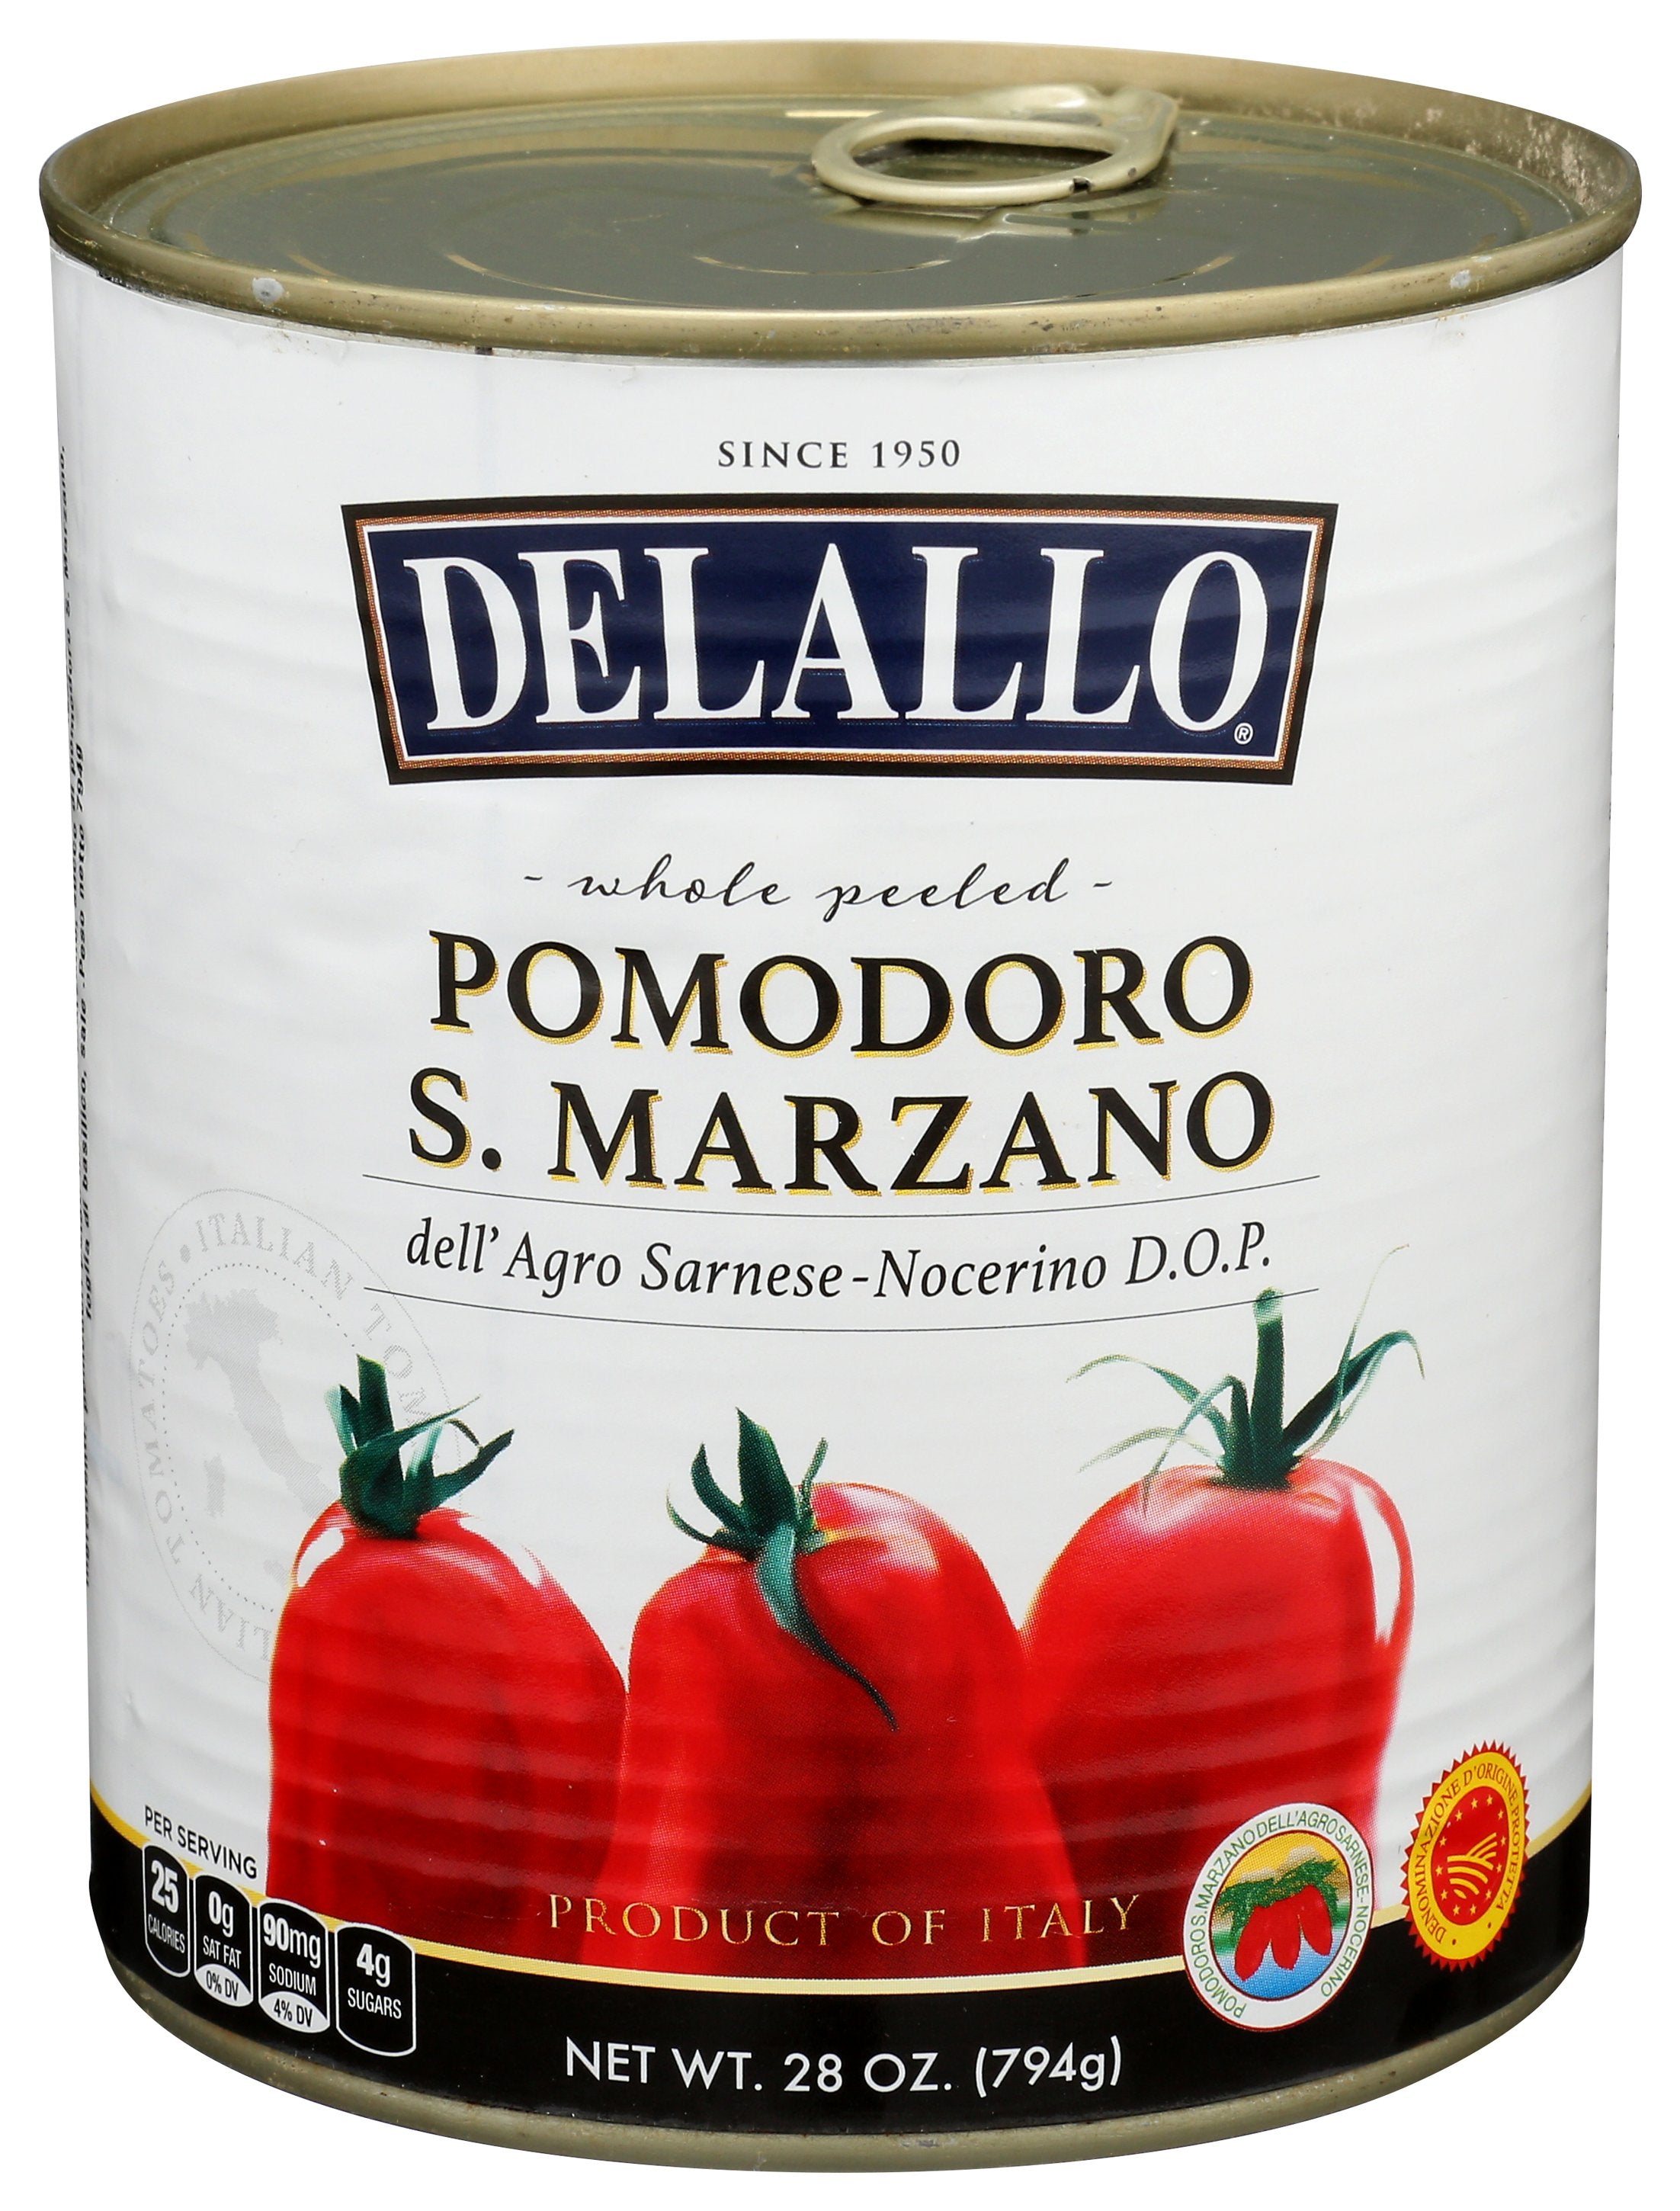 DELALLO TOMATO IMPORT MARZANO - Case of 6